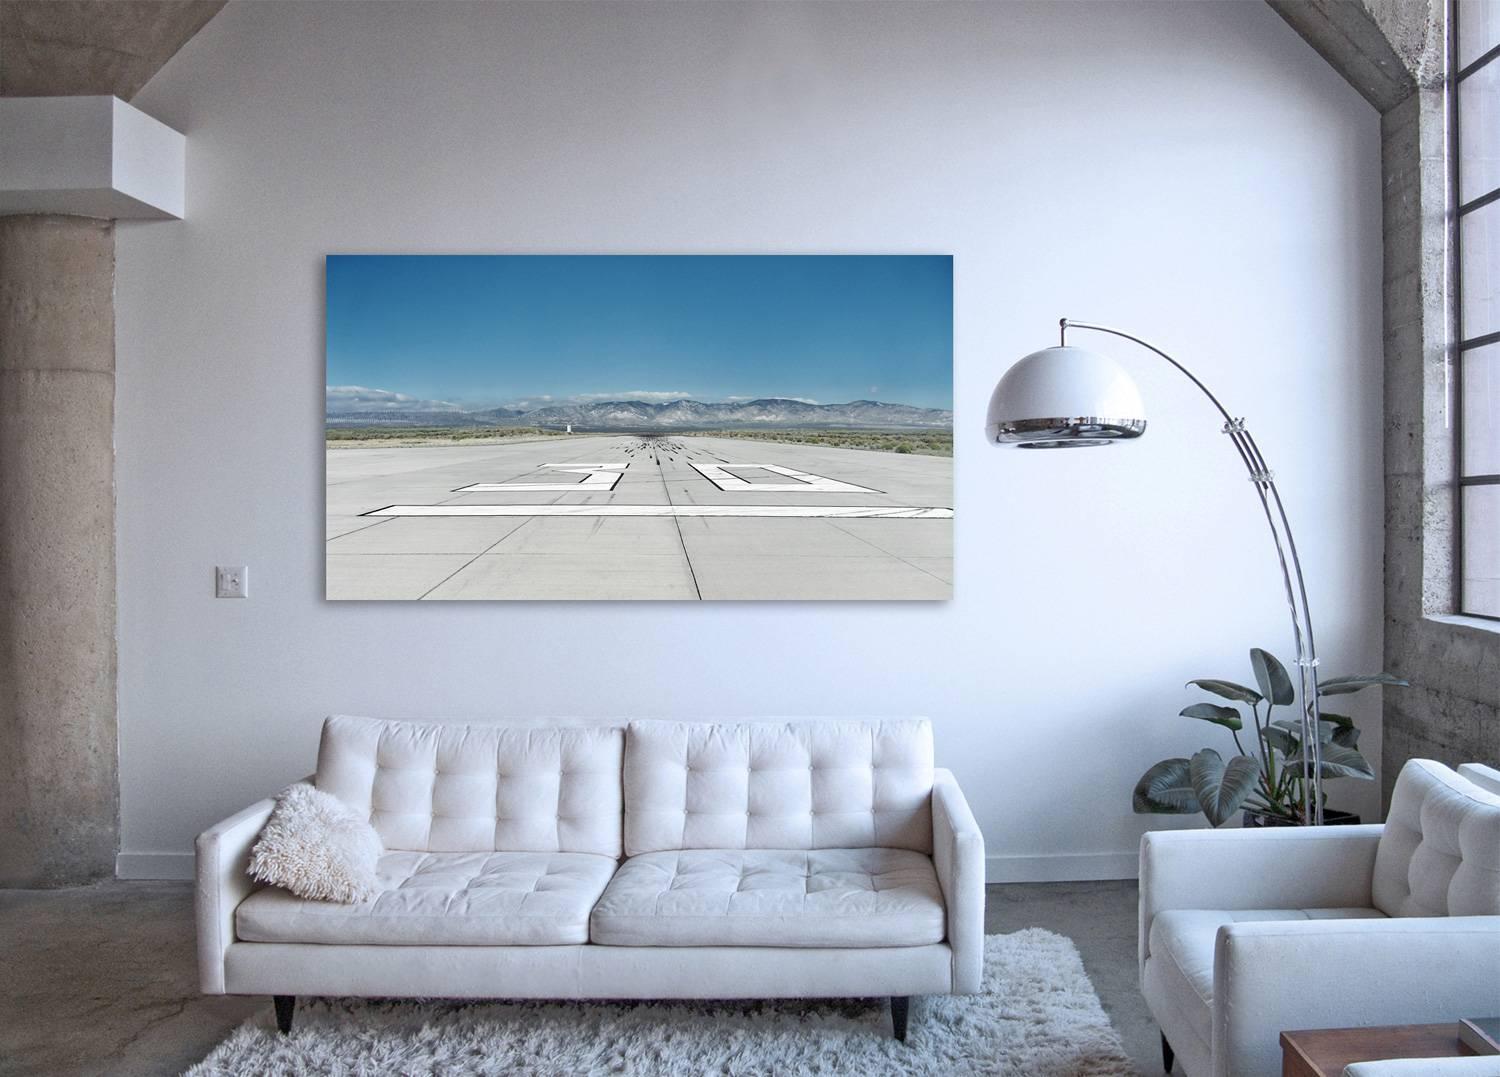 Laufsteg – Großformatfotografie des ikonischen Flughafen-Laufsteg-Teppichs – Photograph von Frank Schott